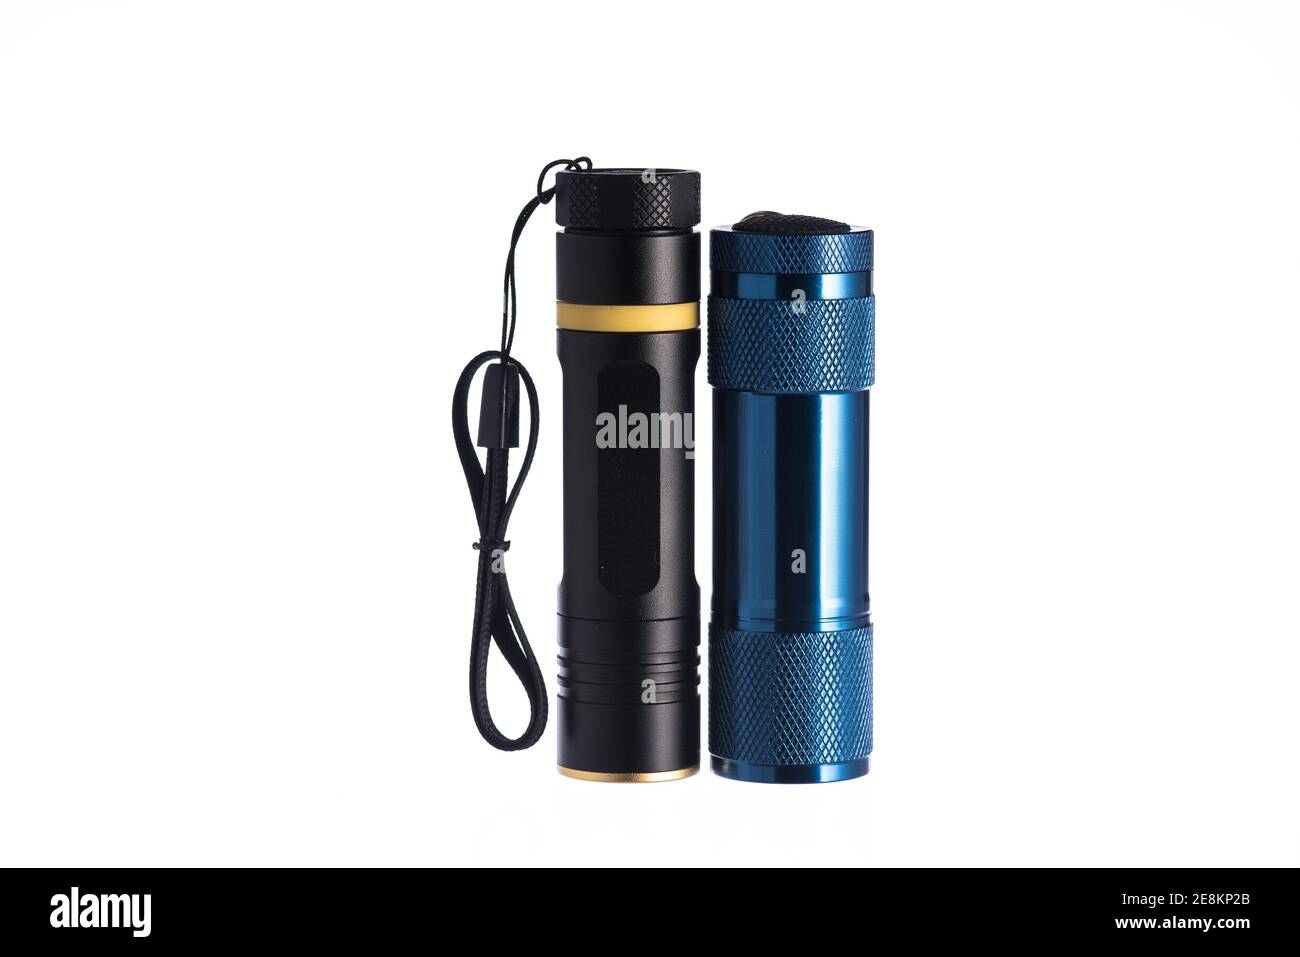 Zwei kleine Taschenlampen, schwarz und blau, nebeneinander auf dem isolierten weißen Hintergrund. Stockfoto